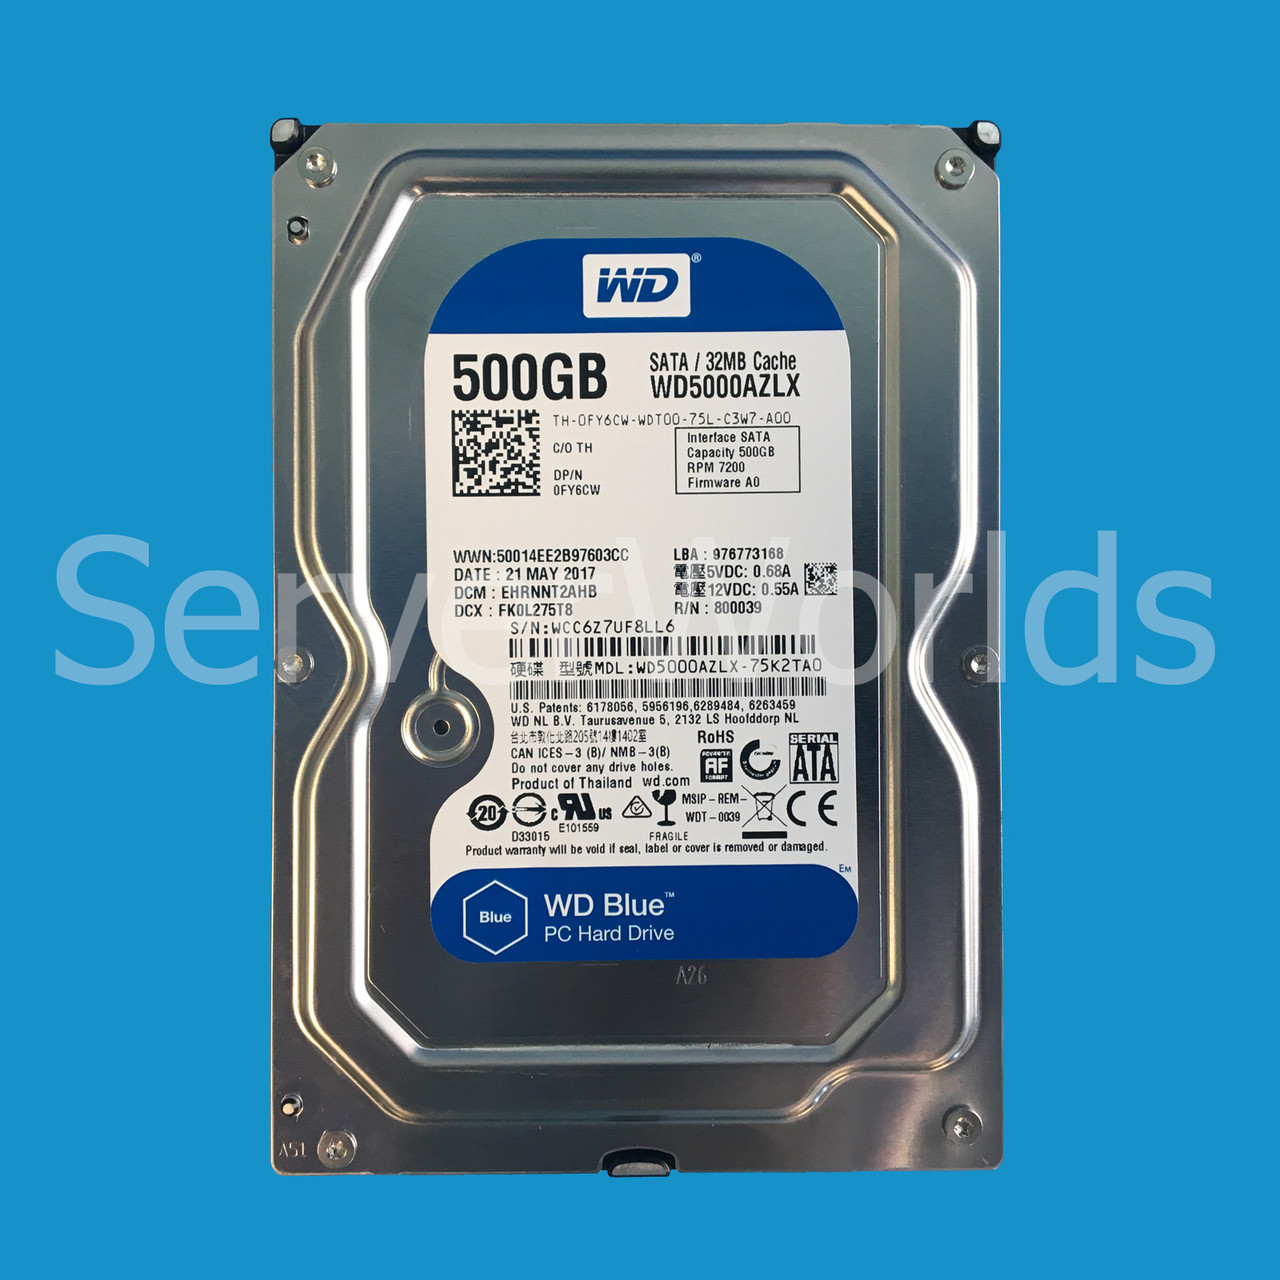 Dell FY6CW 500GB SATA 7.2K 6GBPS 3.5" Drive WD5000AZLX-75K2TA0